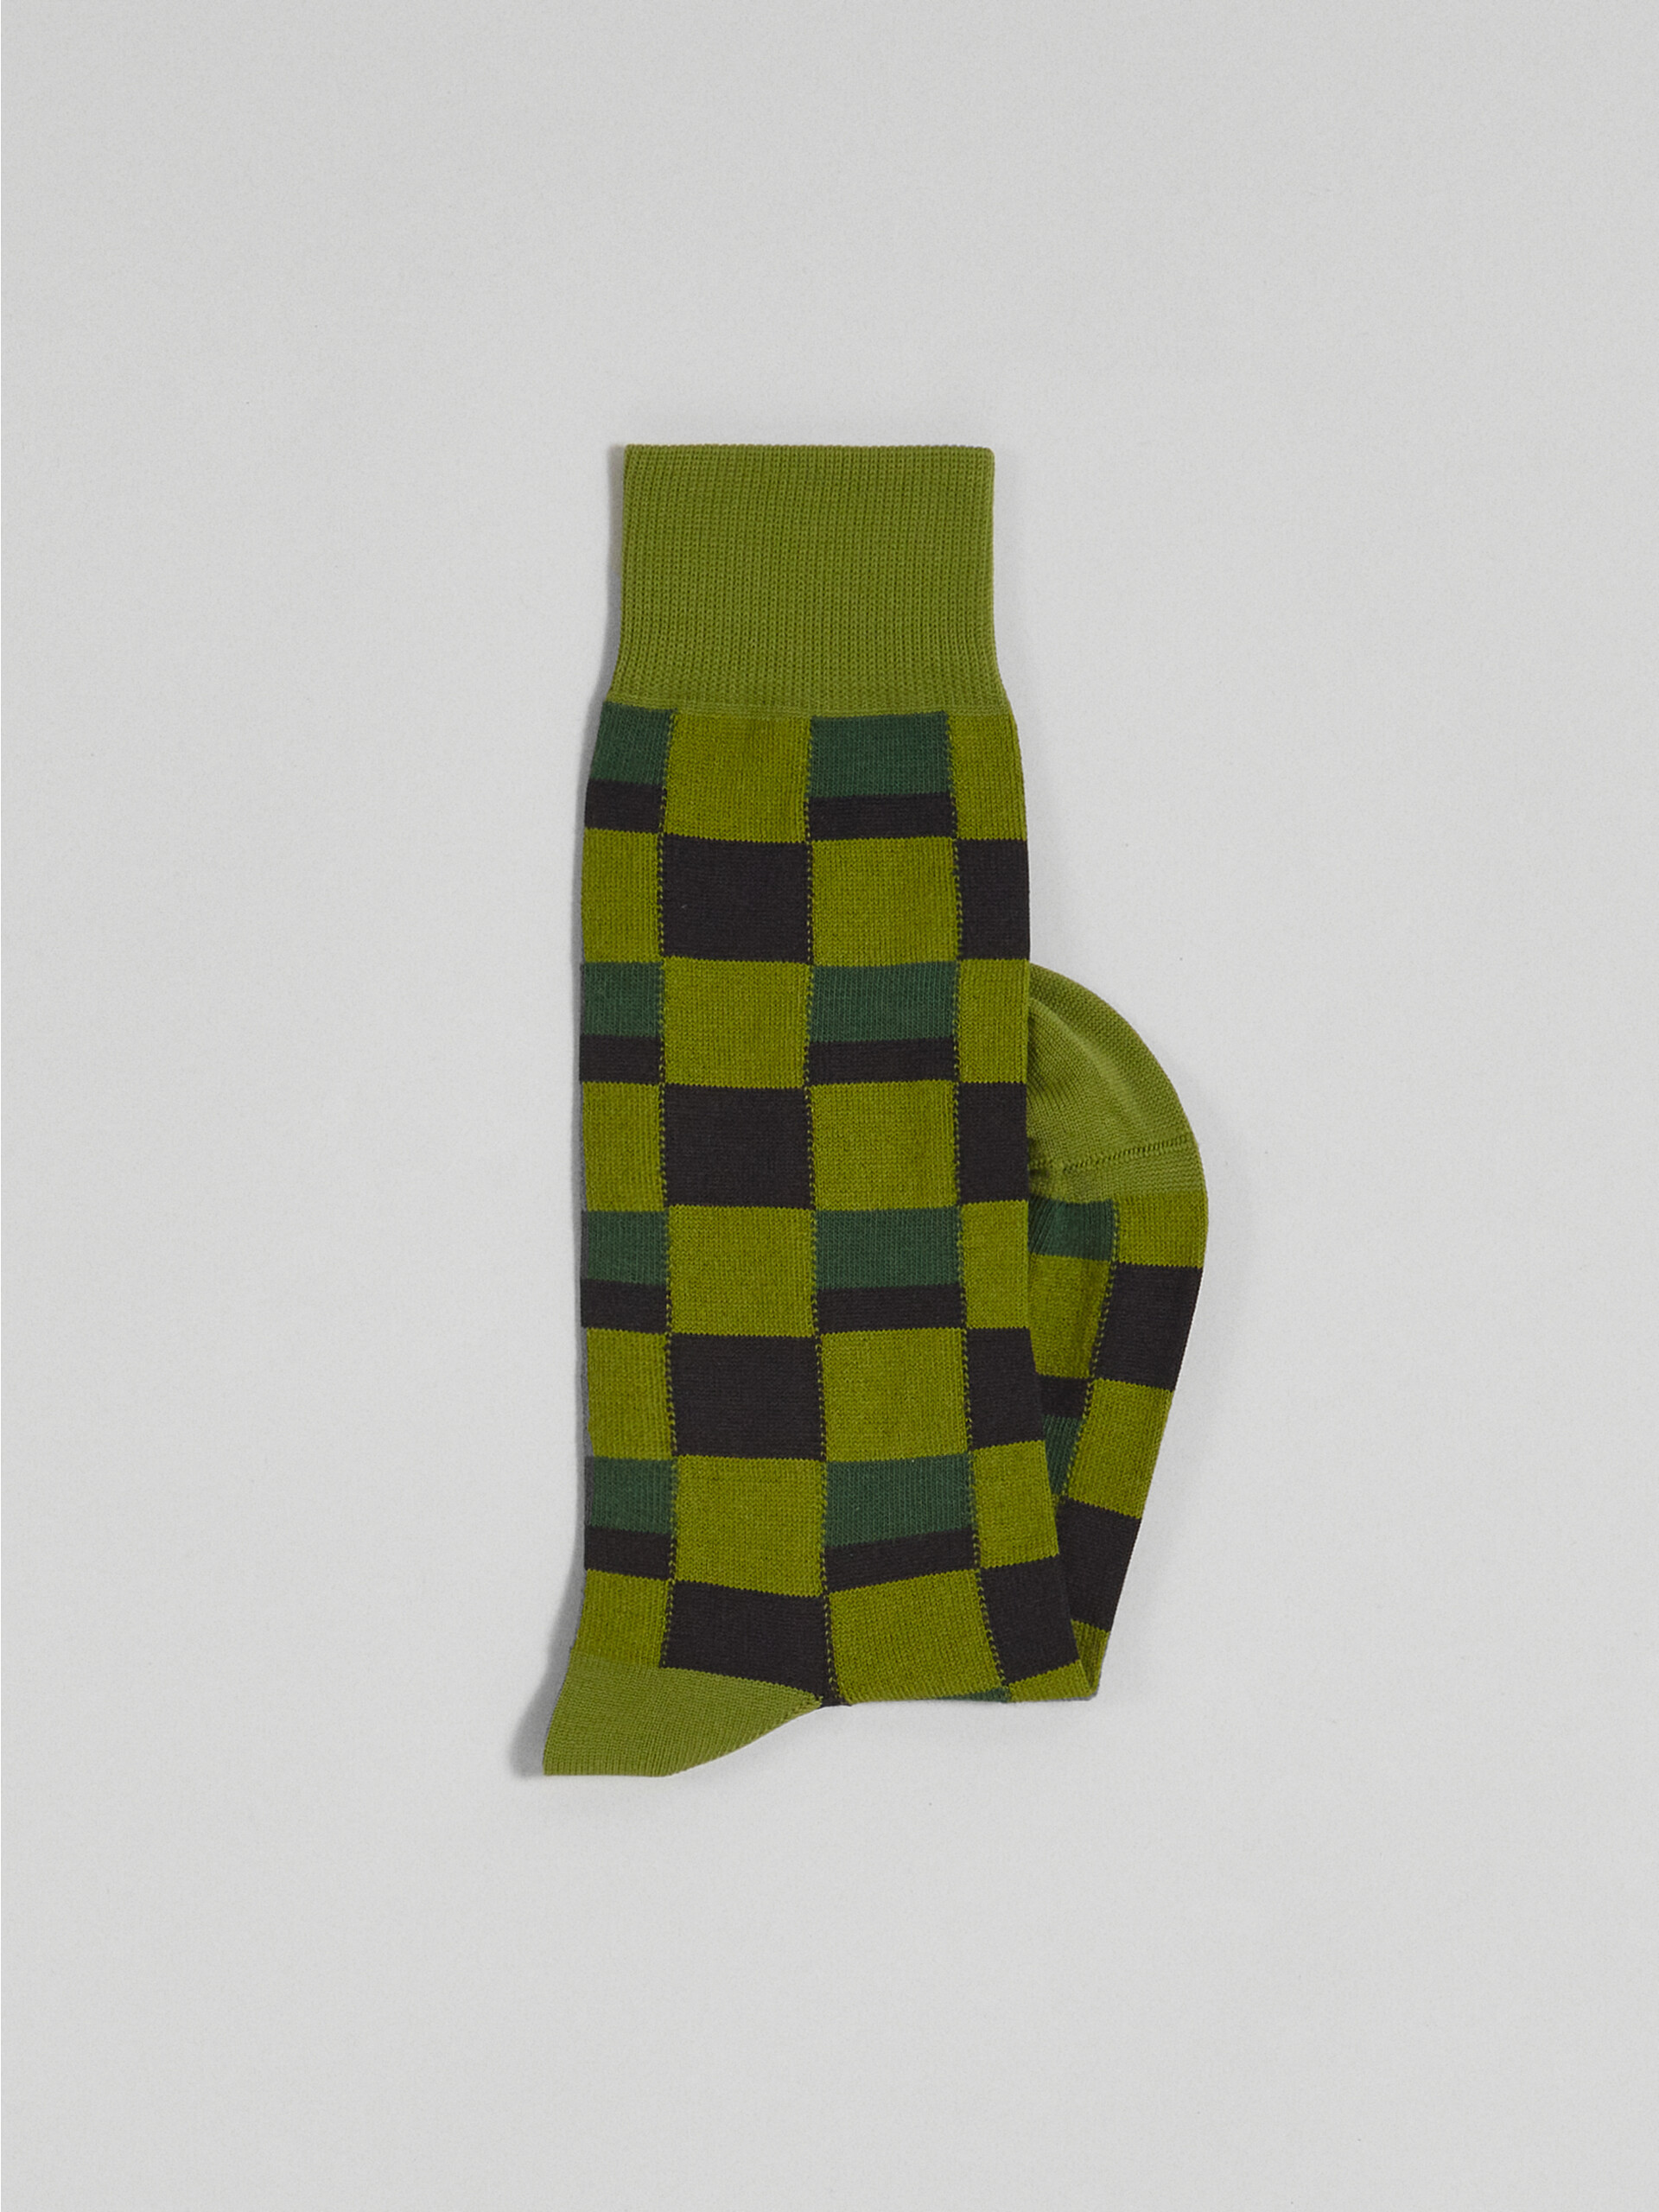 Iconic Damier jacquard cotton and nylon sock - Socks - Image 2